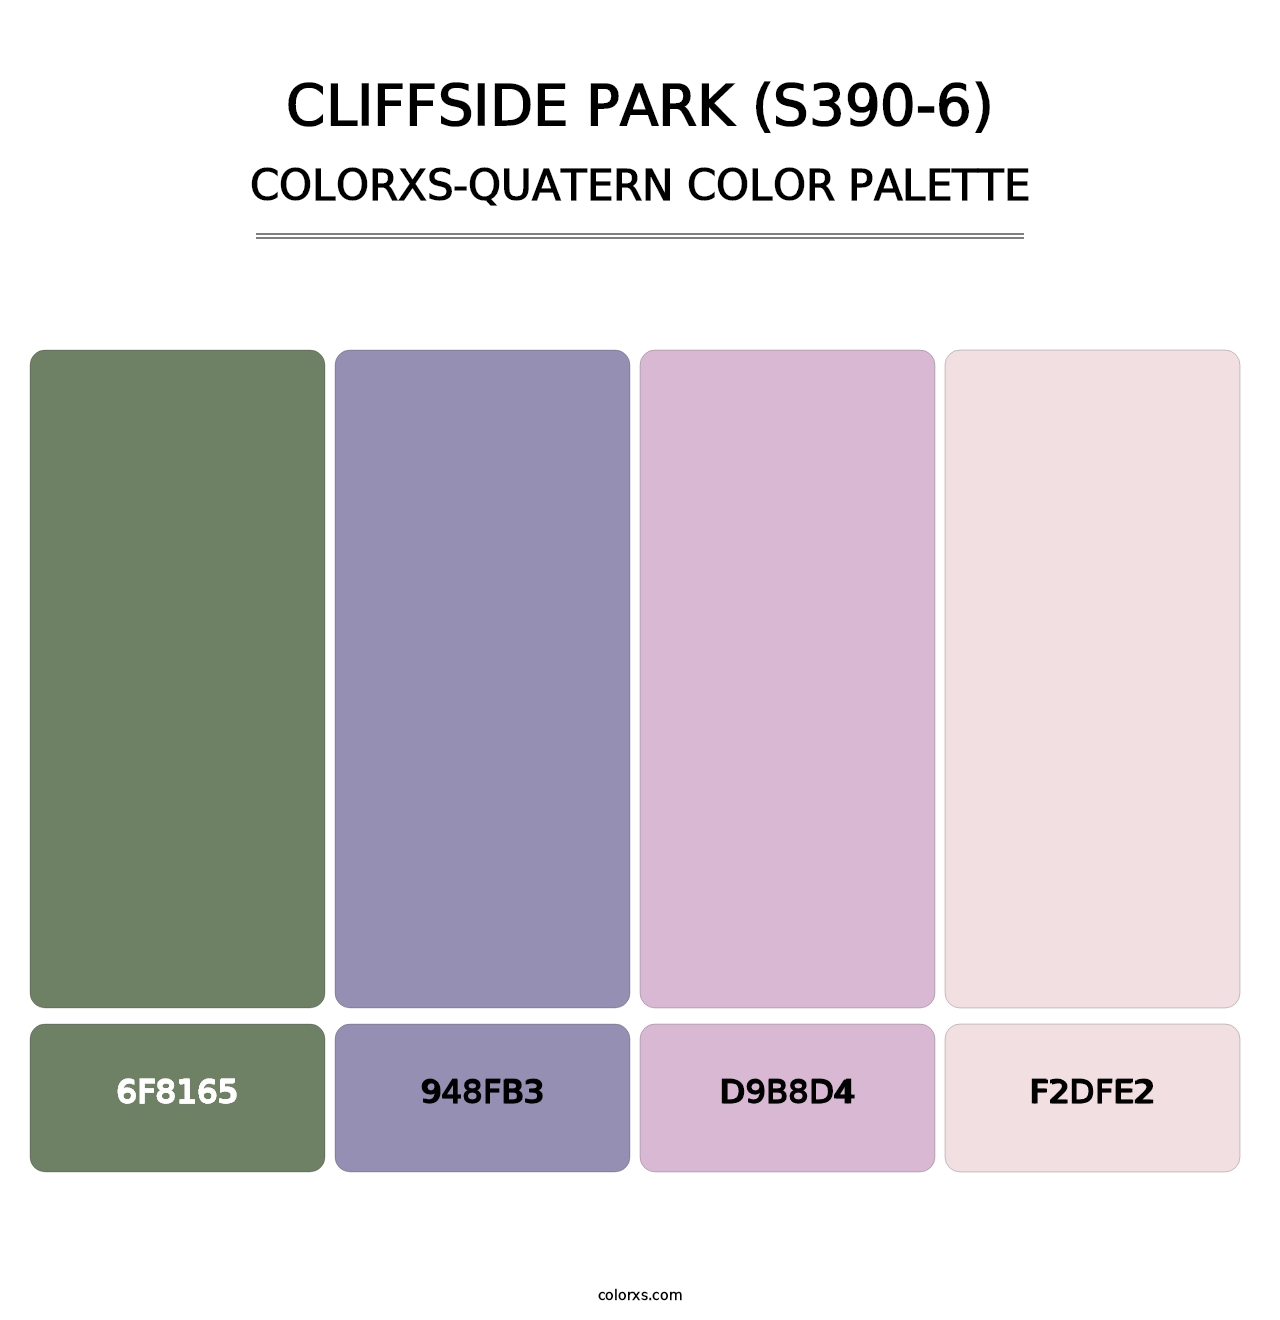 Cliffside Park (S390-6) - Colorxs Quatern Palette